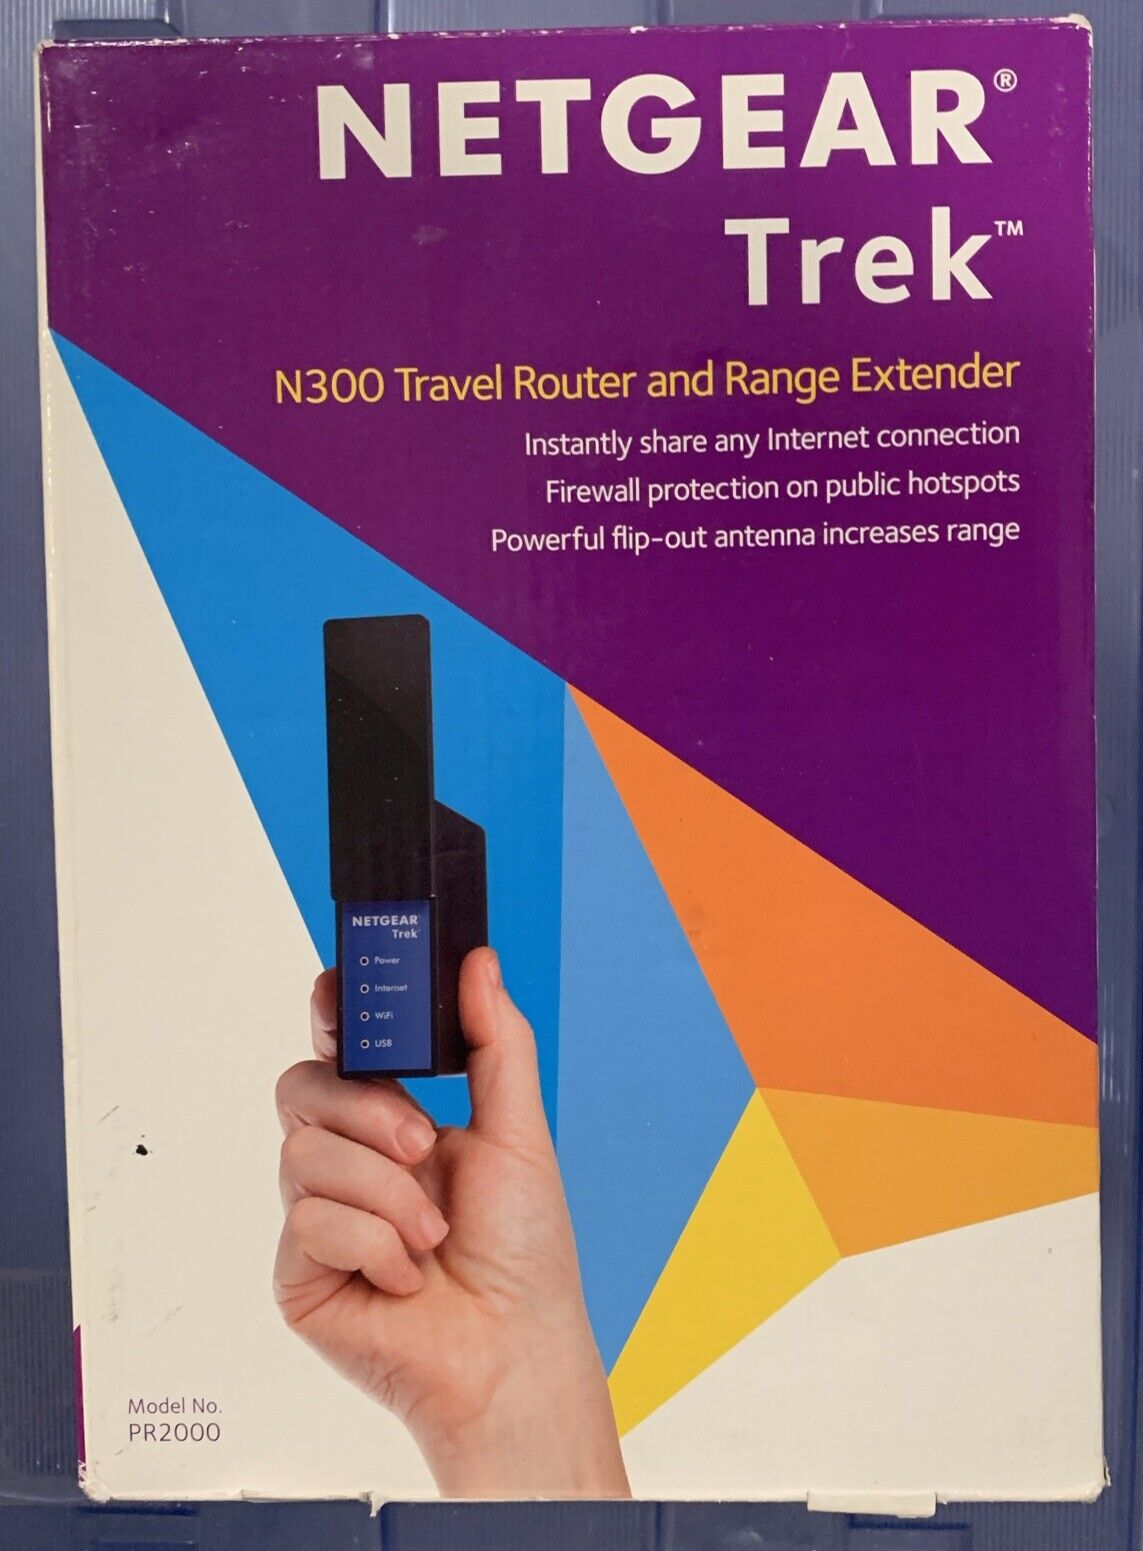 New NETGEAR Trek PR2000 N300 Travel Router and Range Extender USB 2.4ghz 